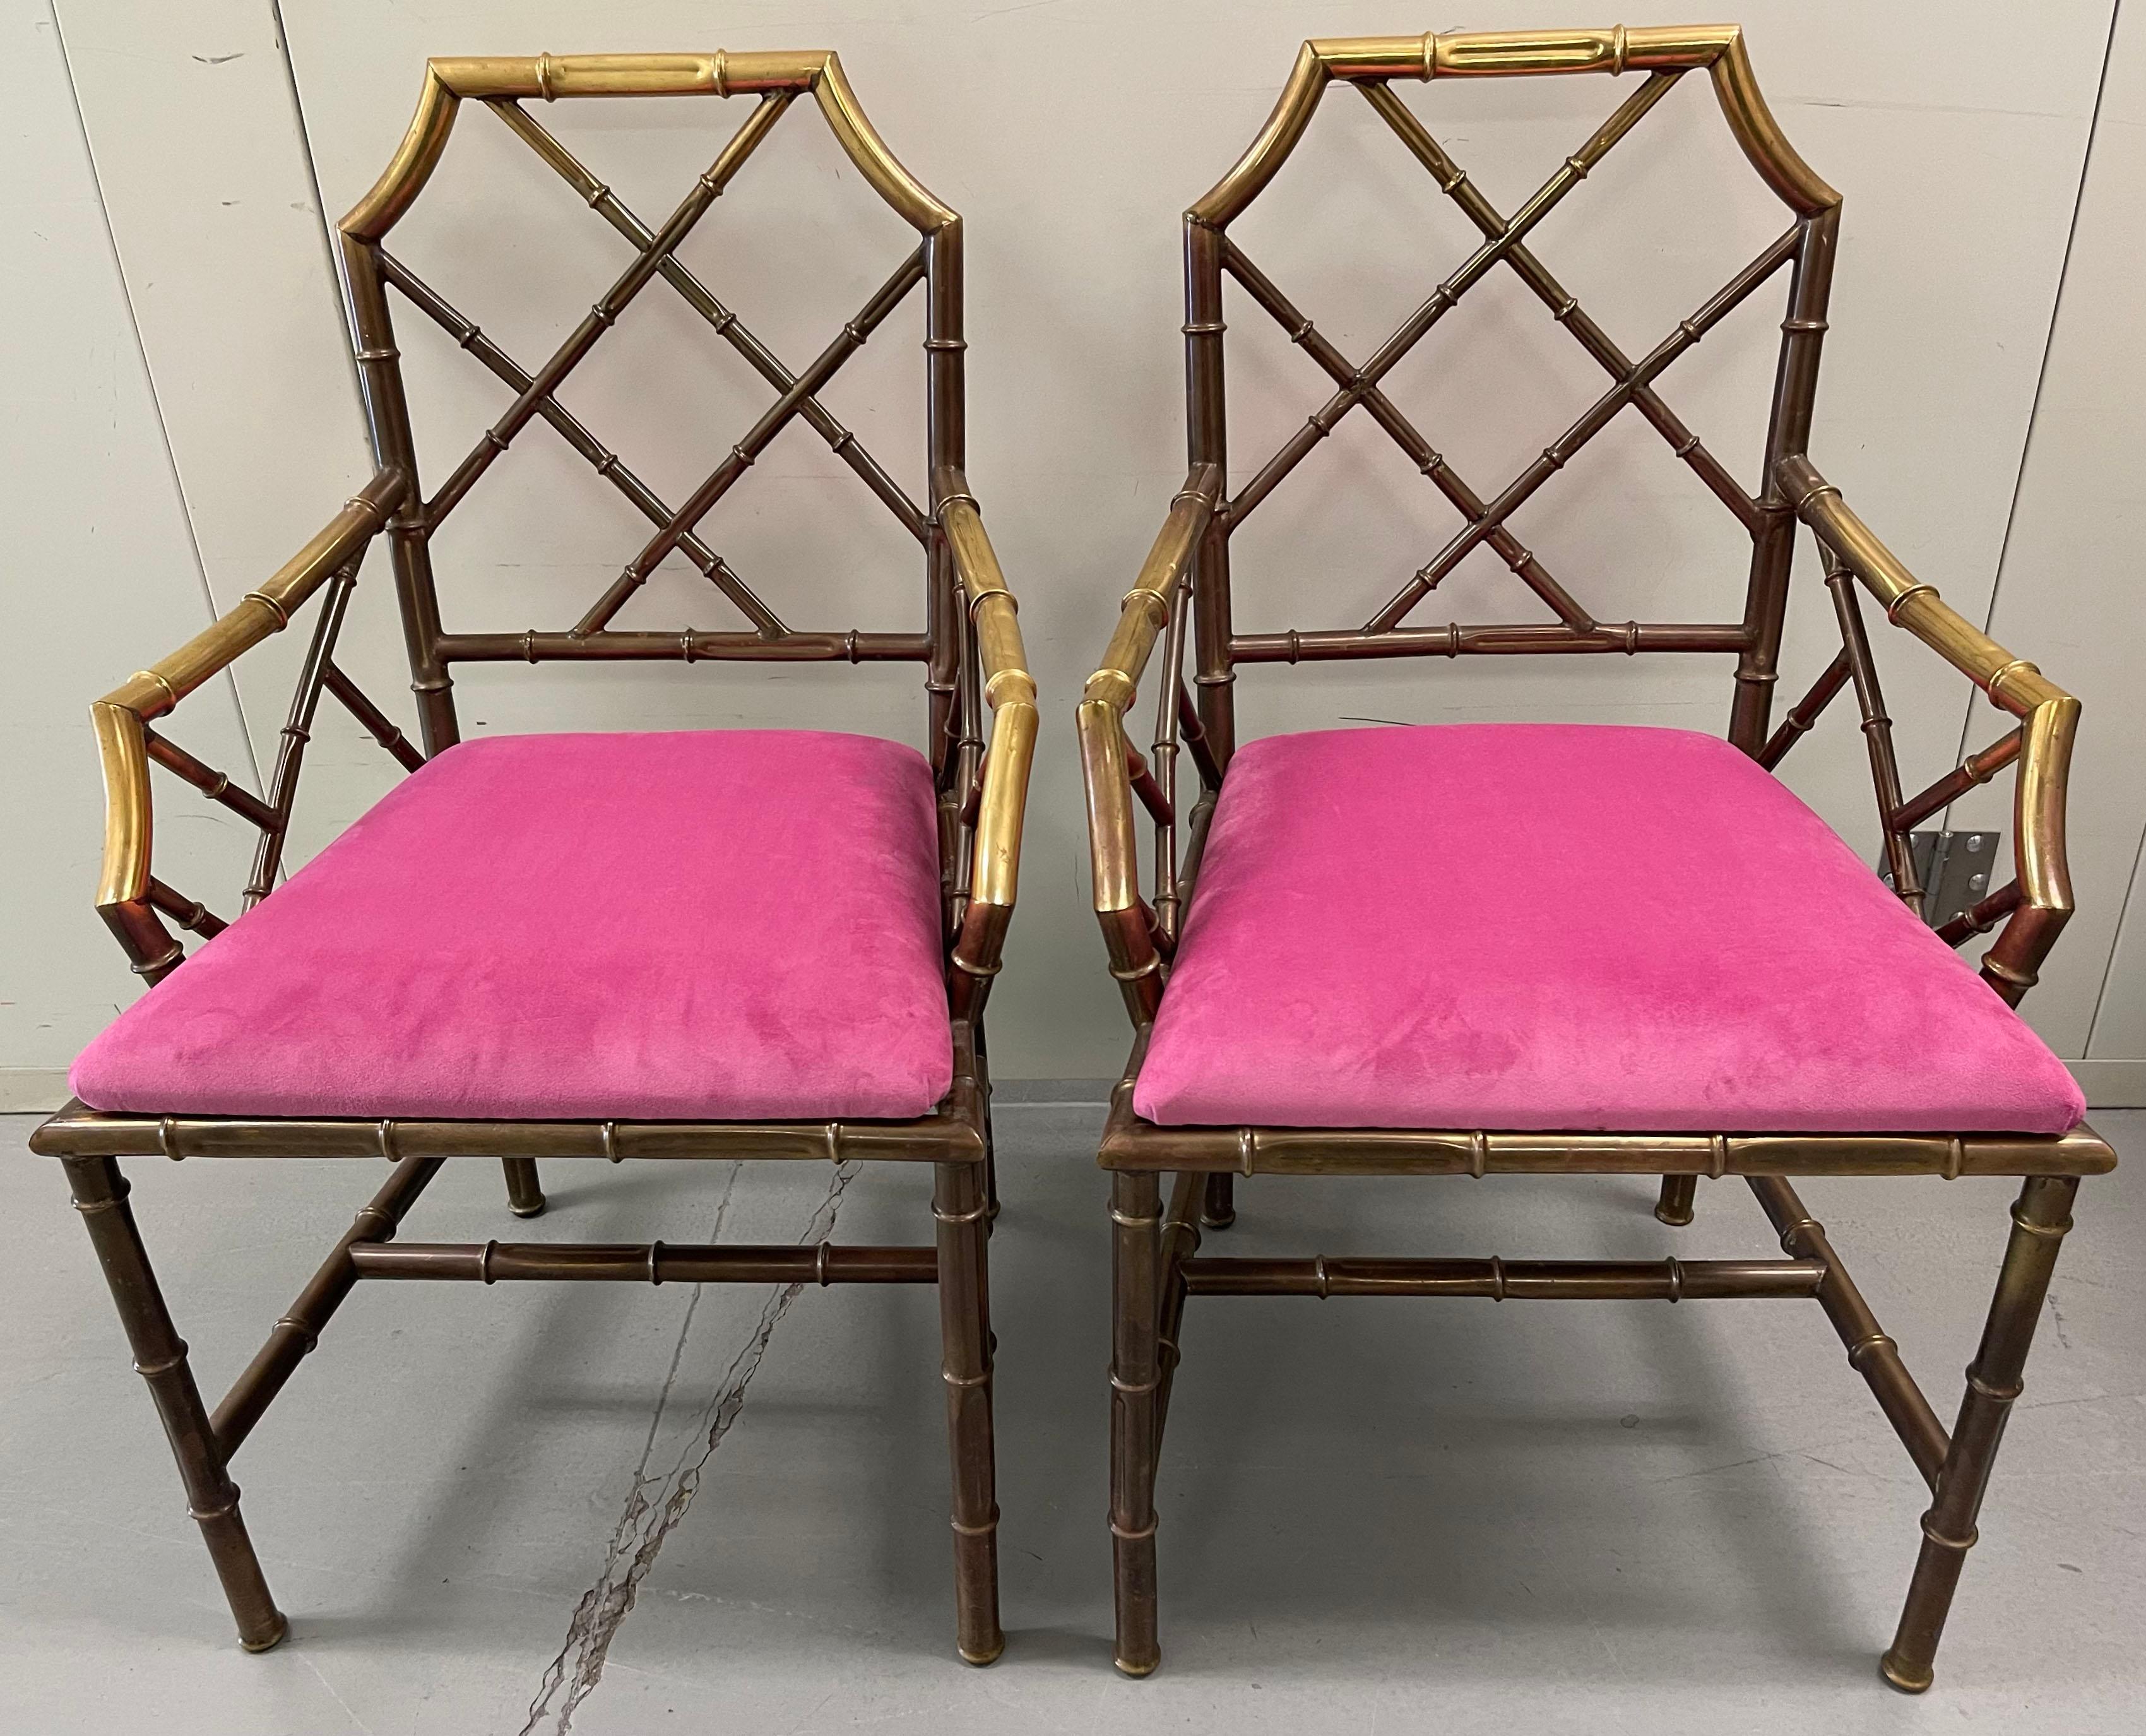 Paire de fauteuils ou chaises à manger en bambou et laiton des années 1970. Finition en laiton poli avec une patine et une usure liées à l'âge. Nouvellement tapissé d'un tissu en velours rose. Les chaises sont estampillées Made in Italy sur la face